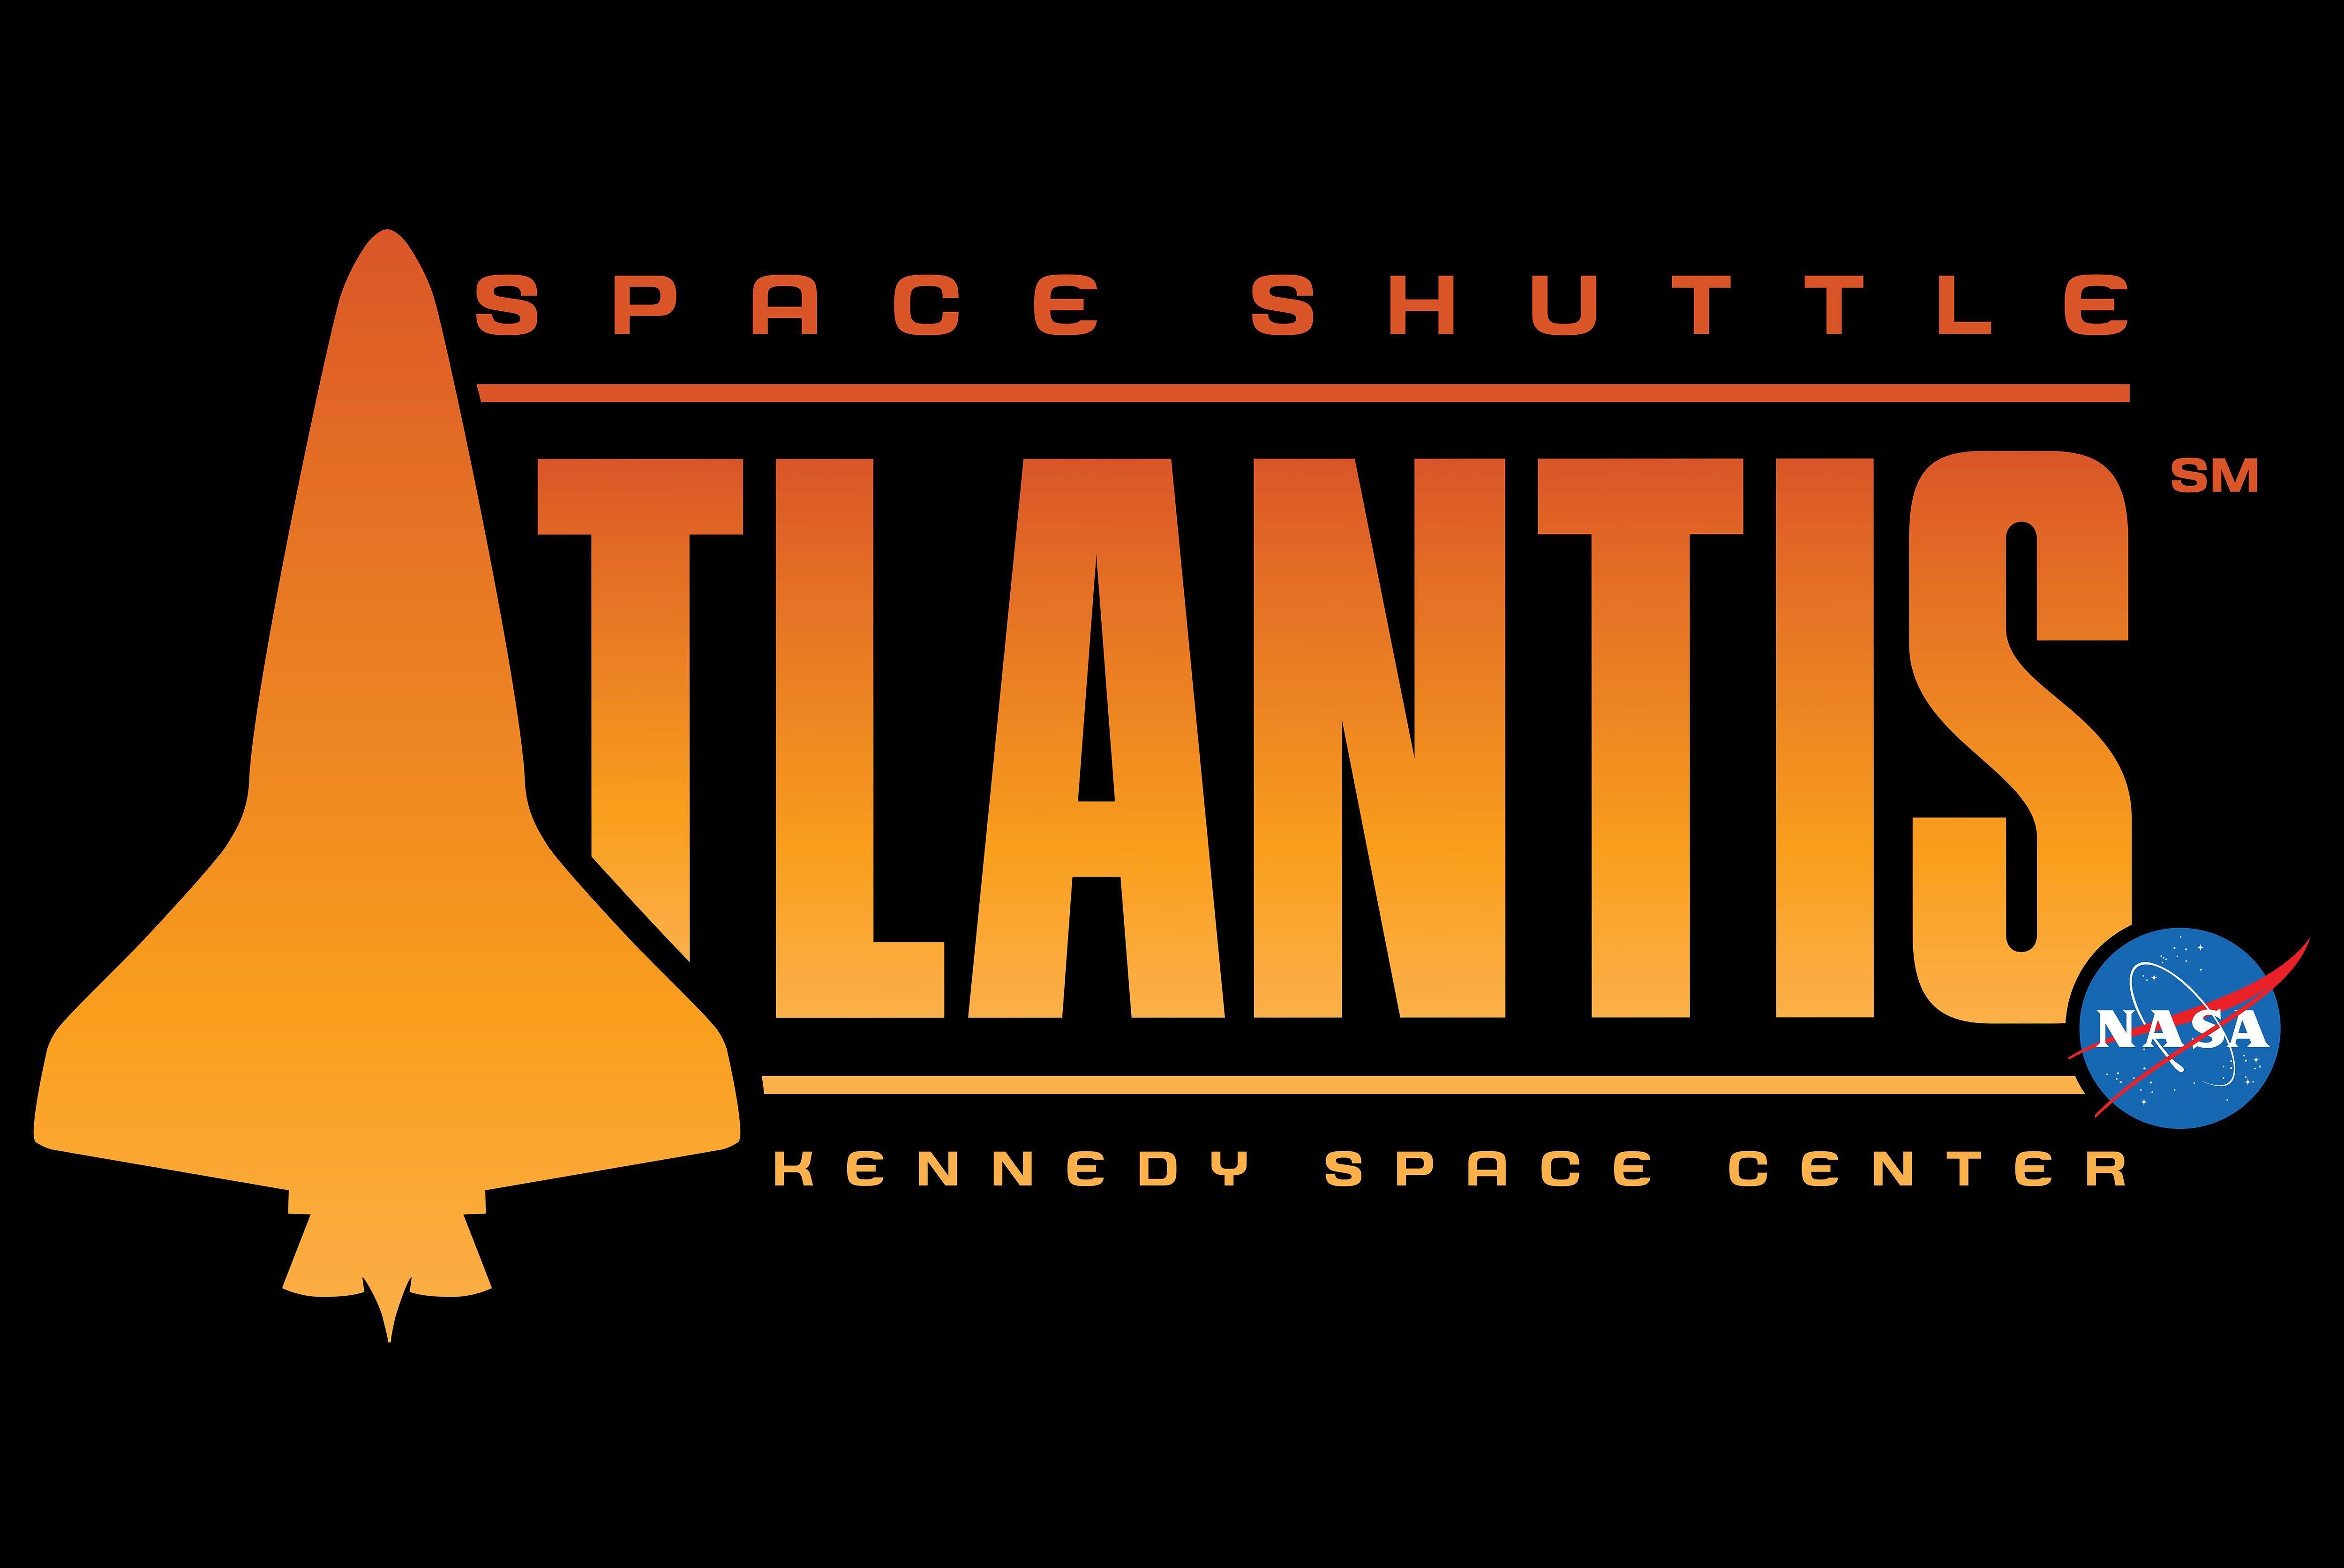 Shuttle Launch NASA Logo - Atlantis' New Home to Open June 29 | NASA